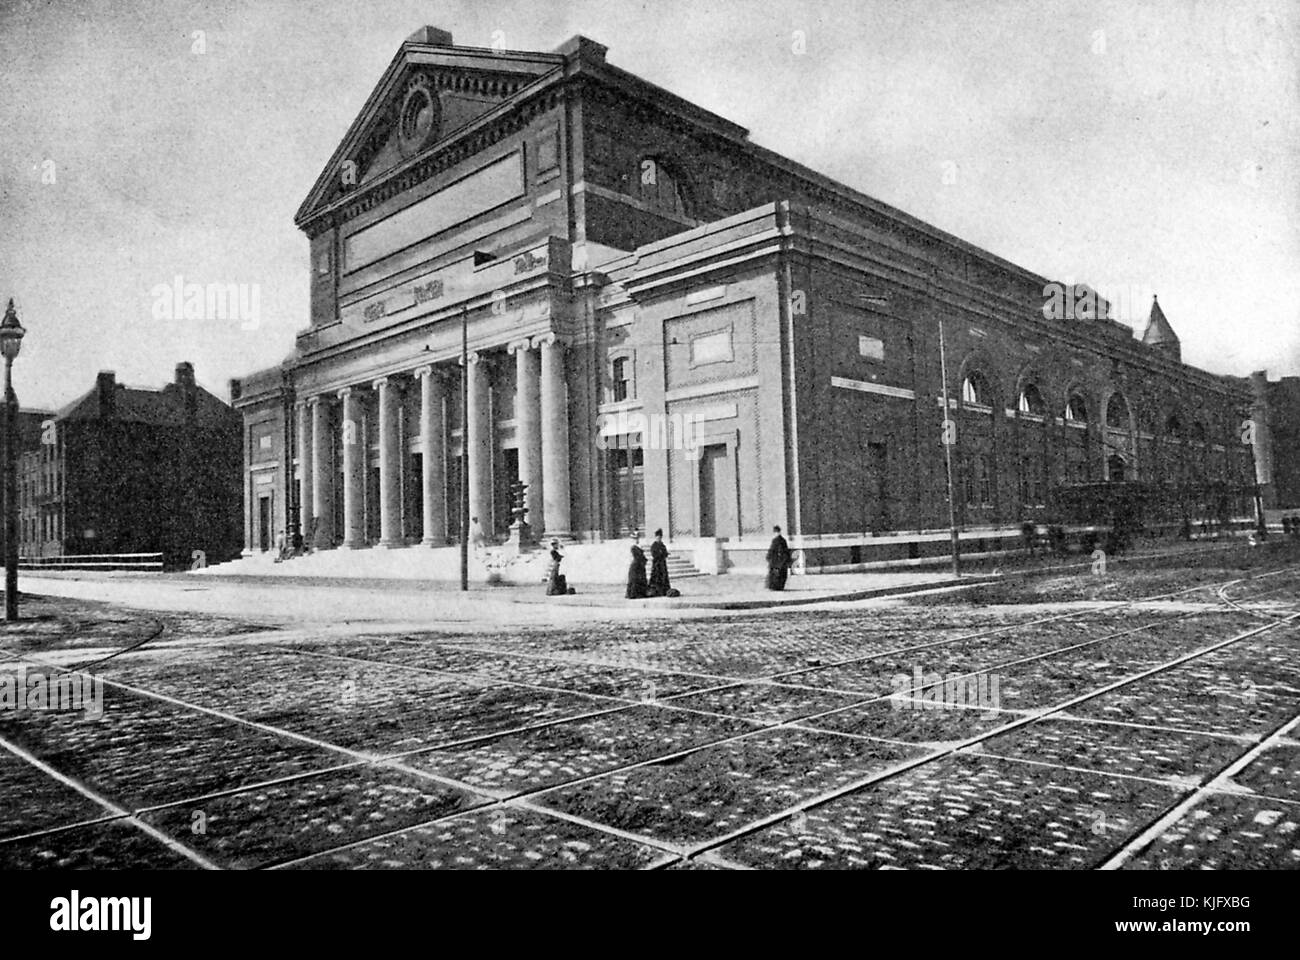 Photographie extérieure du Symphony Hall, construit en 1900 pour l'Orchestre symphonique de Boston, il a été désigné site historique national en 1999, il est considéré comme la meilleure salle de concert du pays et l'une des plus grandes du monde, Boston, Massachusetts, 1905. Banque D'Images